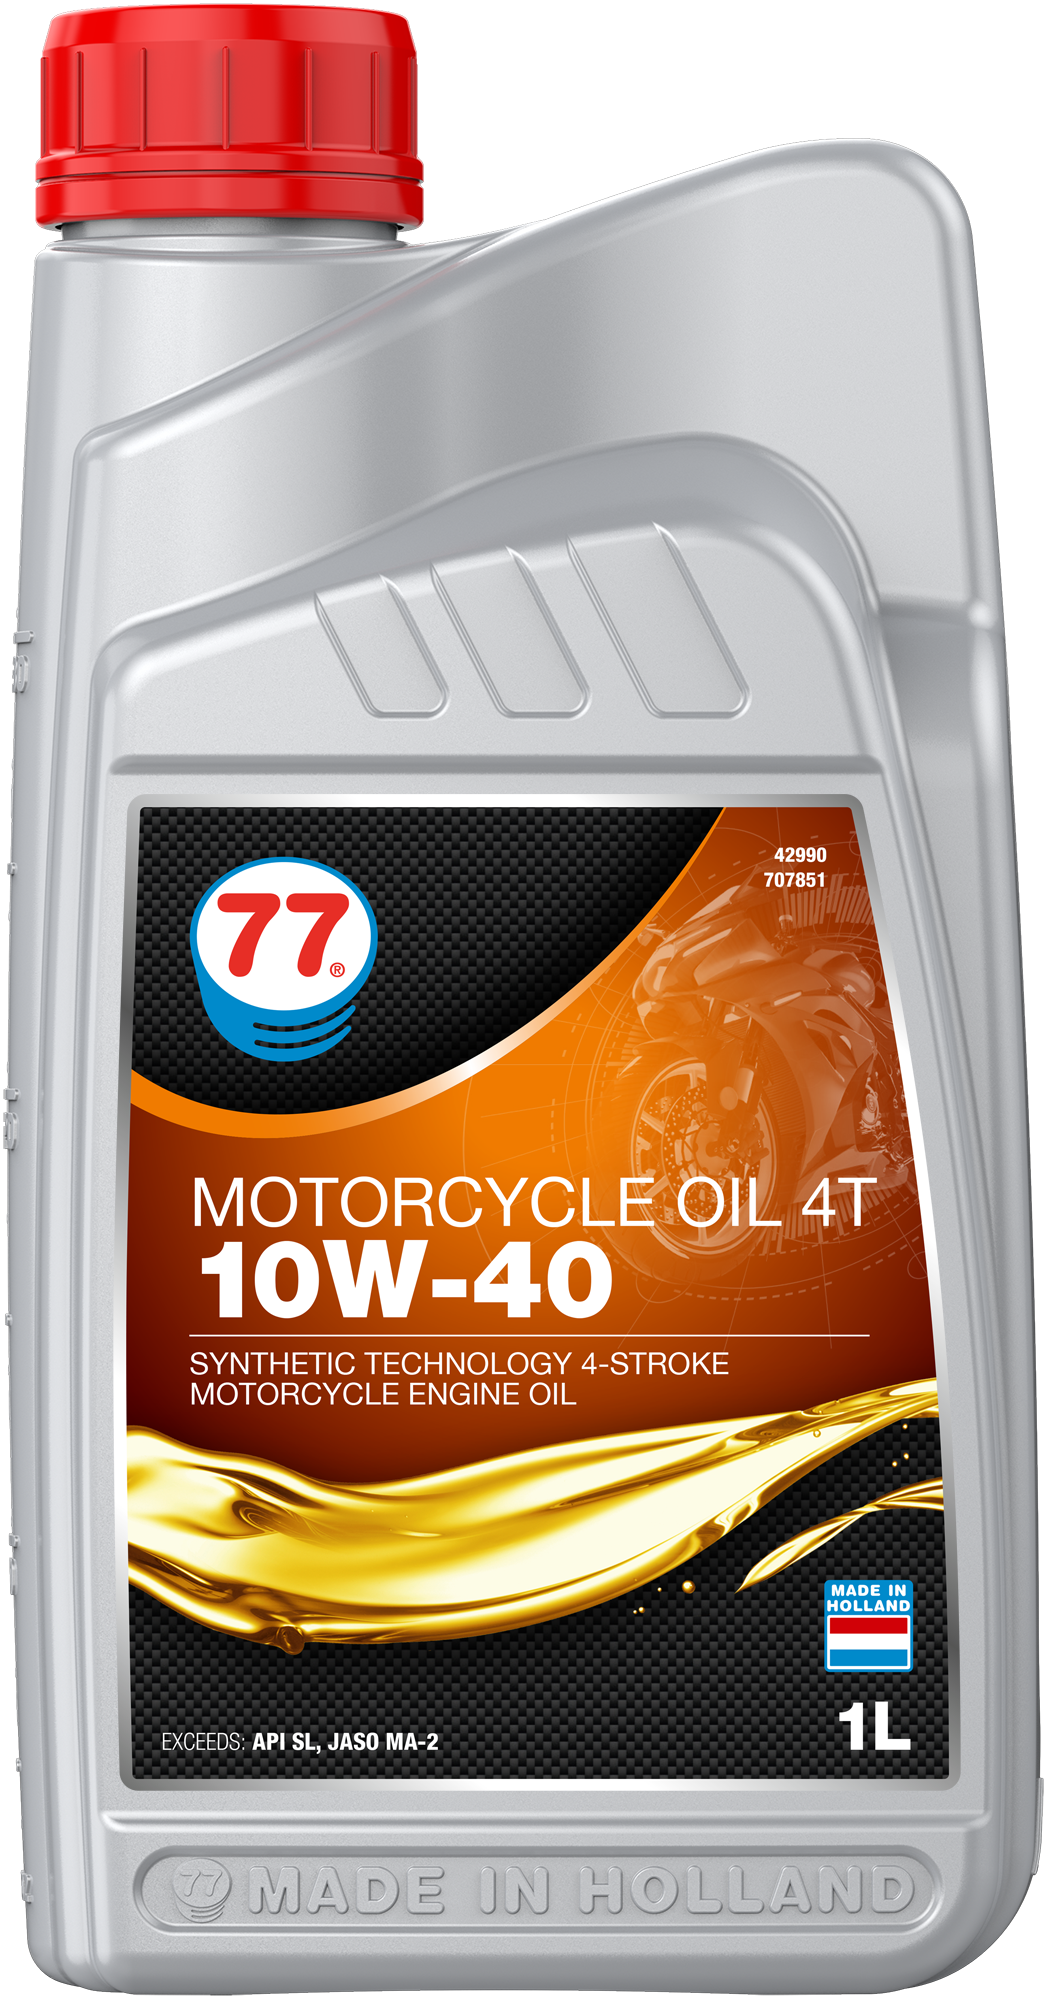 4299-1 Motorcycle Oil 4T 10W-40 is een synthetische technologie gebaseerde 4-takt benzinemotor olie speciaal ontwikkeld om te voldoen aan de speciale eisen van de nieuwste high performance lucht en vloeistof gekoelde 4-takt motorfietsen.